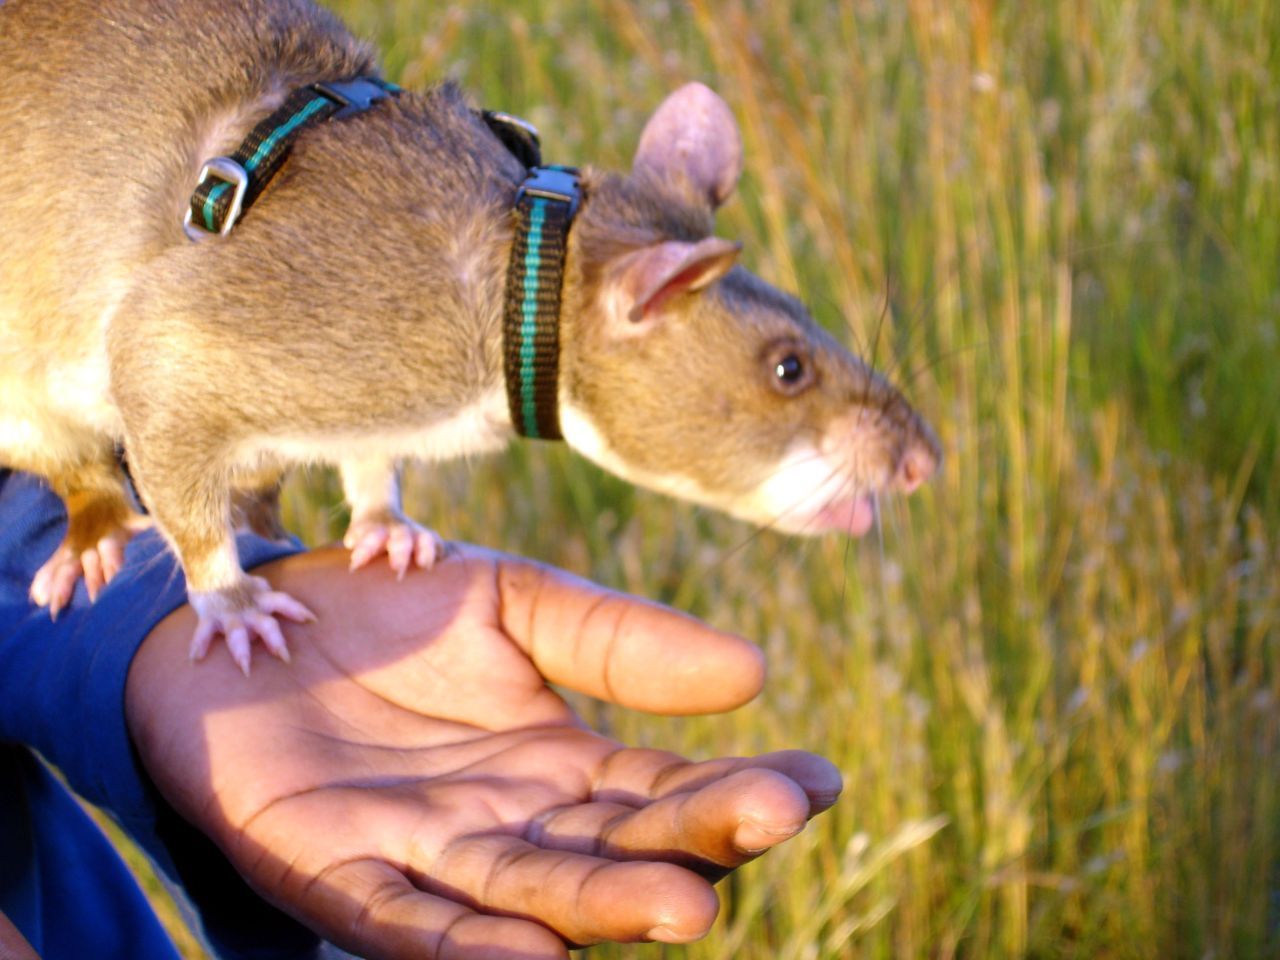 Riesen-Hamsterratte: Die Nager helfen aufgrund ihrer Super-Nase und des leichten Körpergewichts schon seit Jahren bei der Suche nach Landminen. In Tansania, Äthiopien und Mosambik erschnüffeln sie nun auch Tuberkulose. Dank den Tieren konnte die Quote der entdeckten Fälle um 40 Prozent erhöht werden. Eine Ratte kann 100 Proben in 20 Minuten prüfen. Ein Labor bräuchte bis zu vier Tage dafür. 